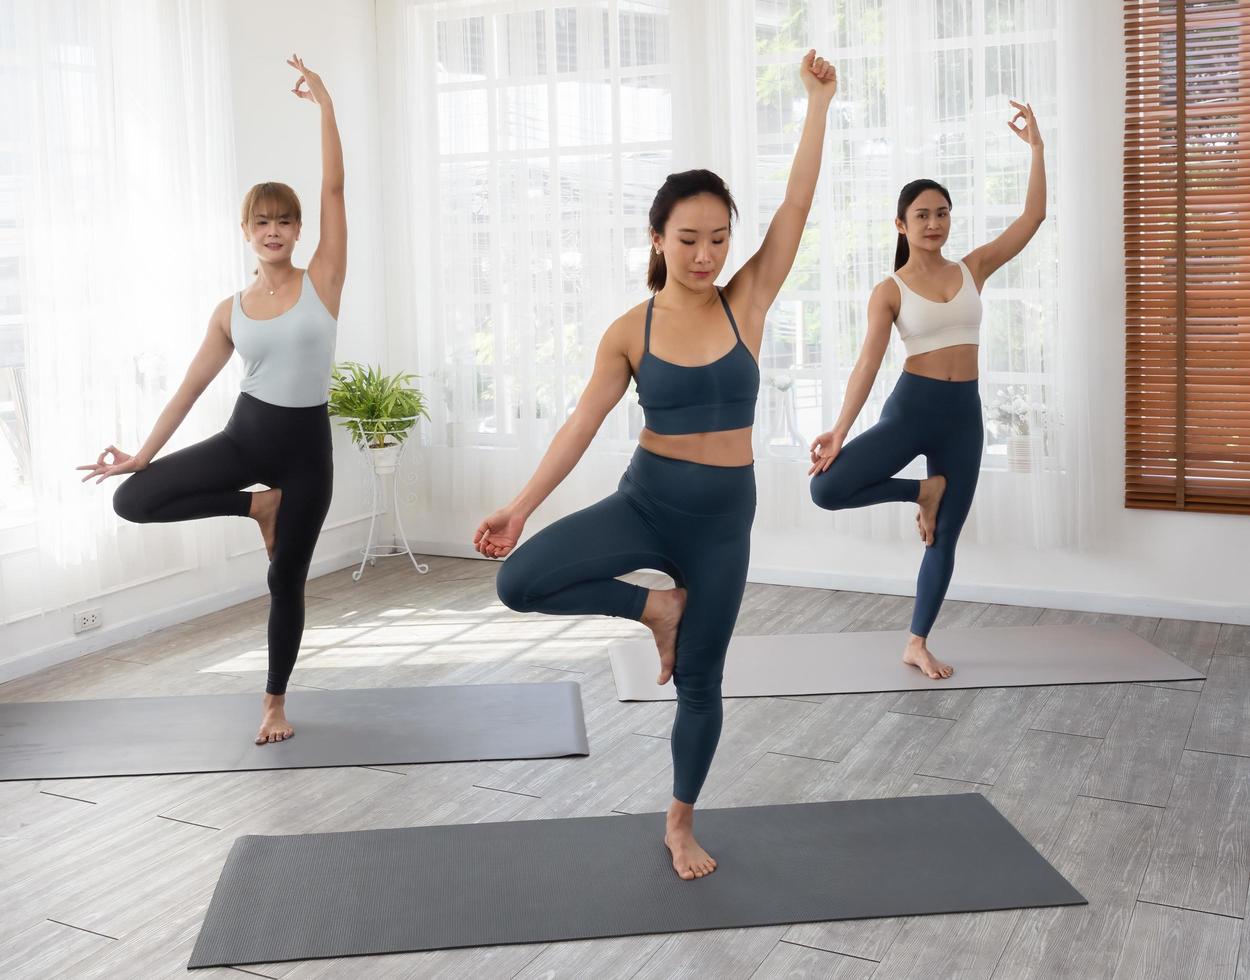 trois belles femmes asiatiques séduisantes pratiquent la pose pendant leur cours de yoga dans une salle de sport. deux femmes pratiquent le yoga ensemble. photo